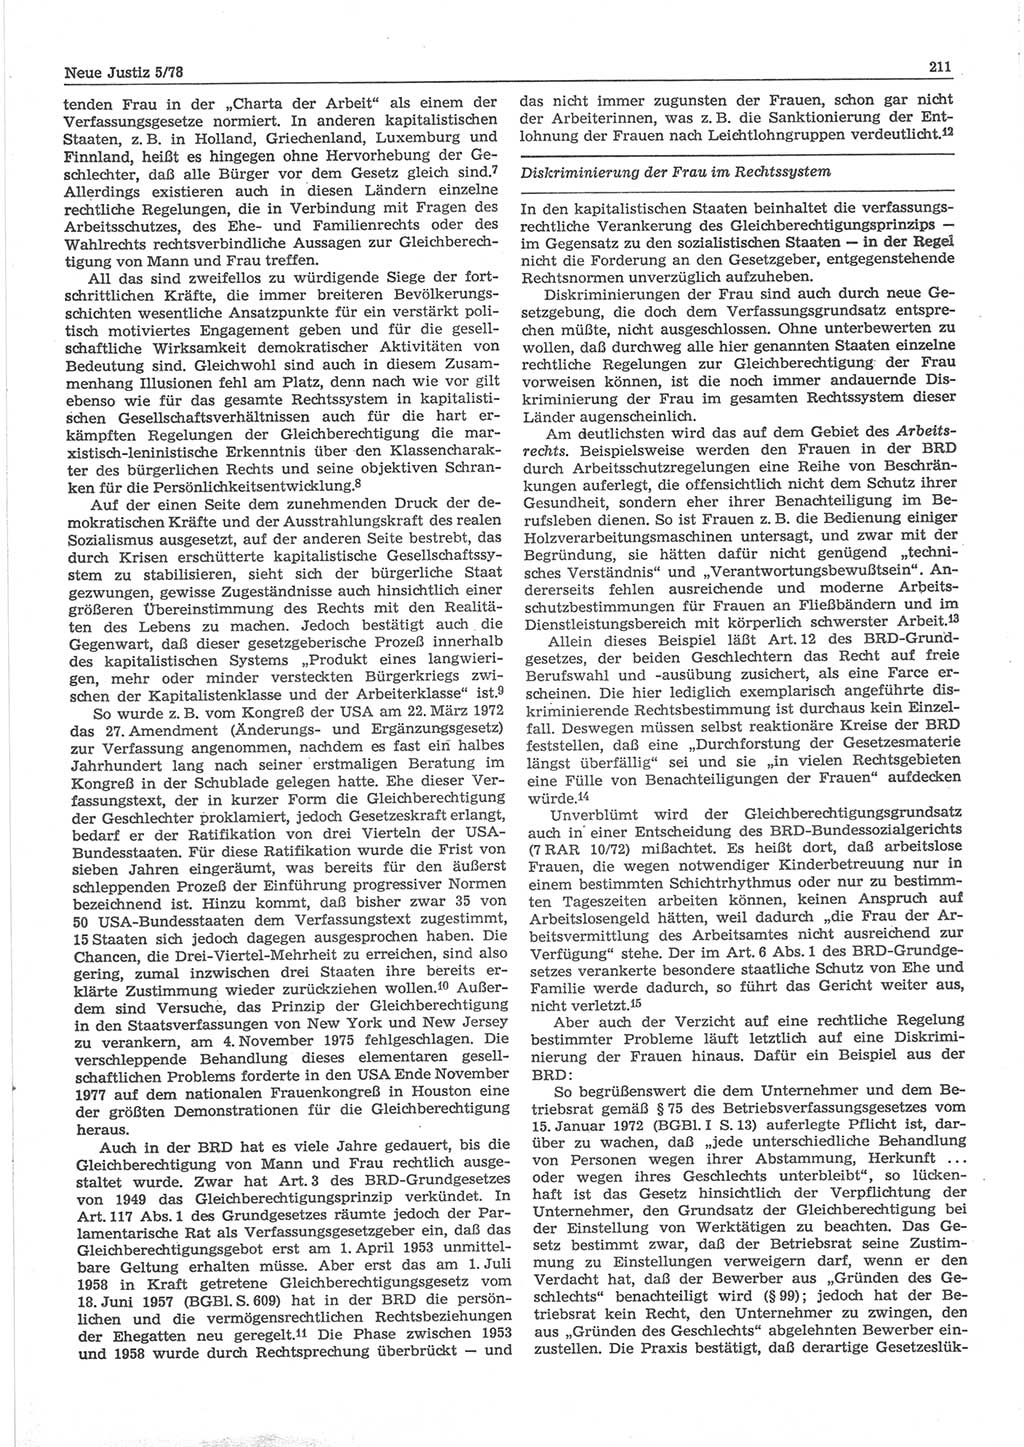 Neue Justiz (NJ), Zeitschrift für sozialistisches Recht und Gesetzlichkeit [Deutsche Demokratische Republik (DDR)], 32. Jahrgang 1978, Seite 211 (NJ DDR 1978, S. 211)